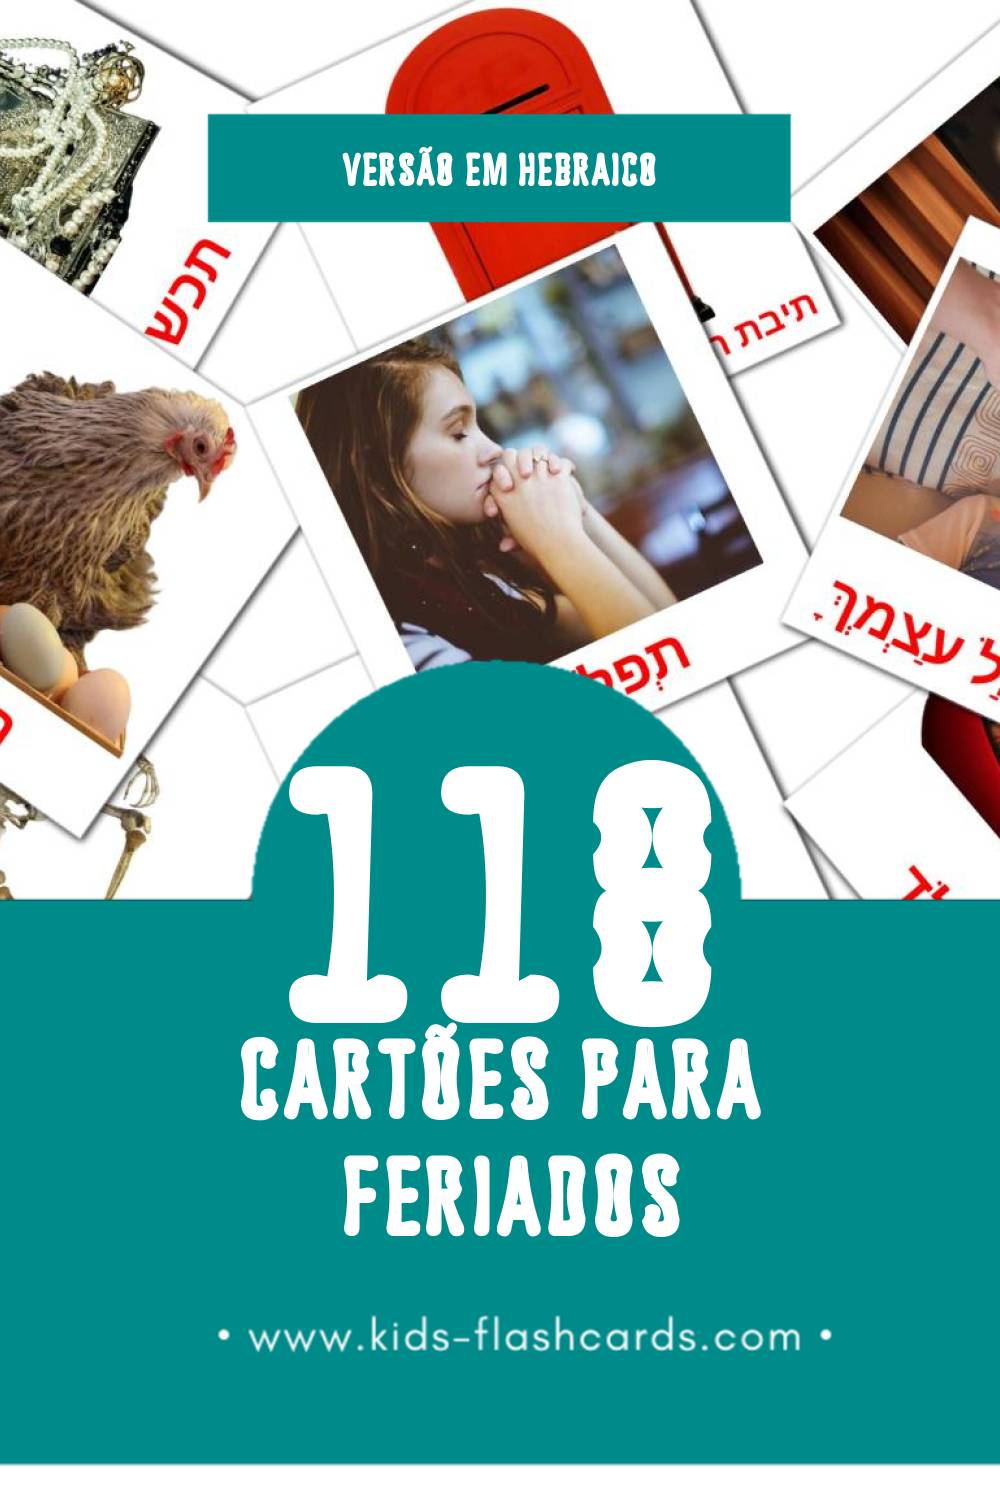 Flashcards de חגים Visuais para Toddlers (118 cartões em Hebraico)